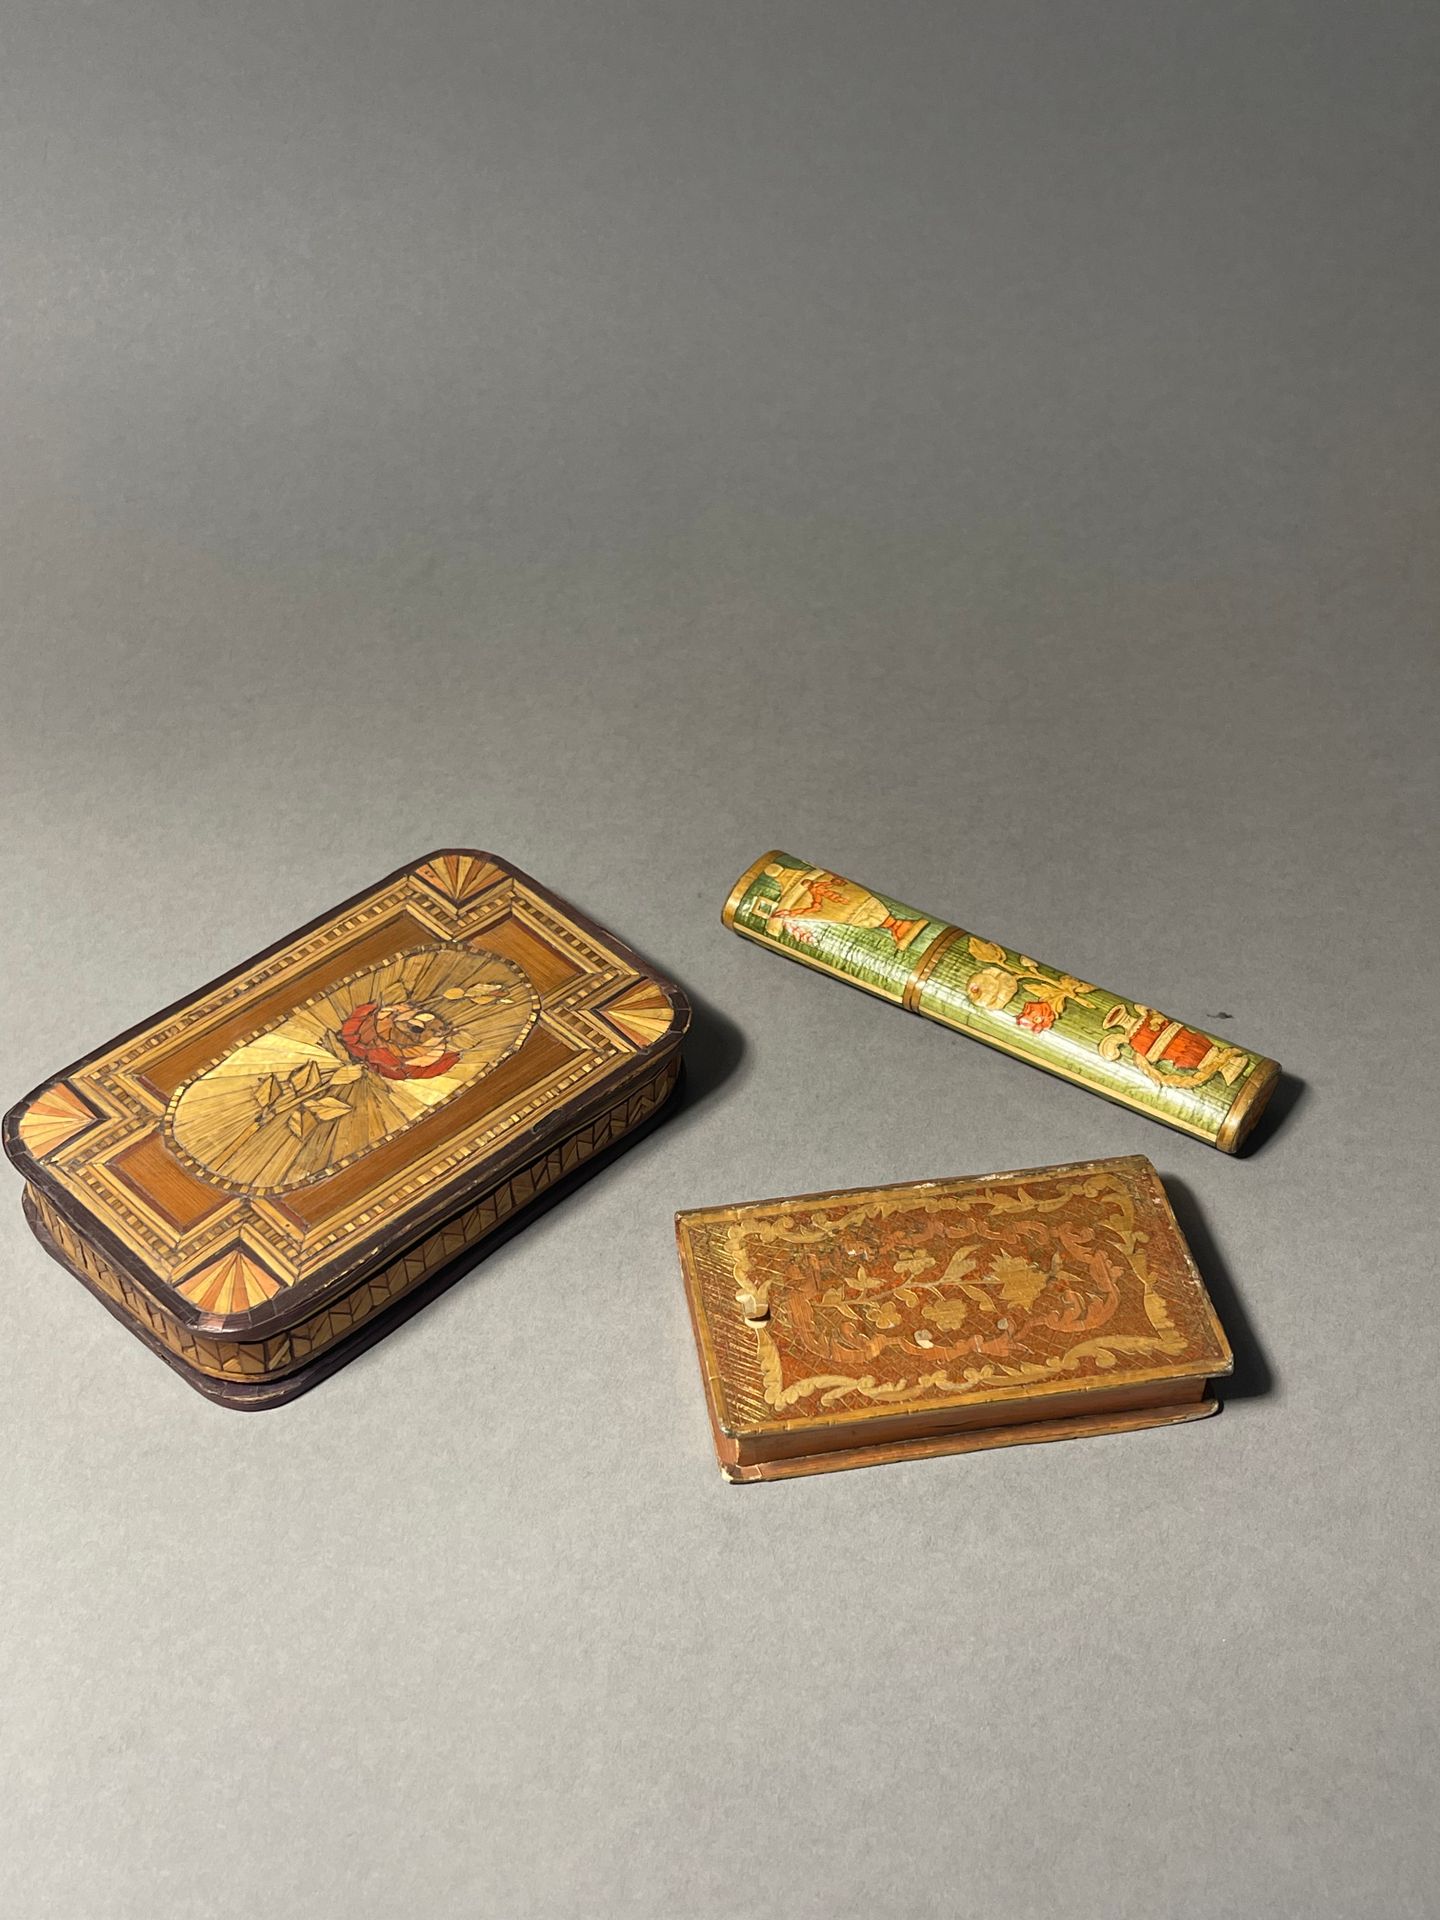 Null 一套三个草编镶嵌盒和箱子 包括一个长方形的箱子，一个模仿装订器的箱子和一个信息箱。
18世纪末-19世纪初